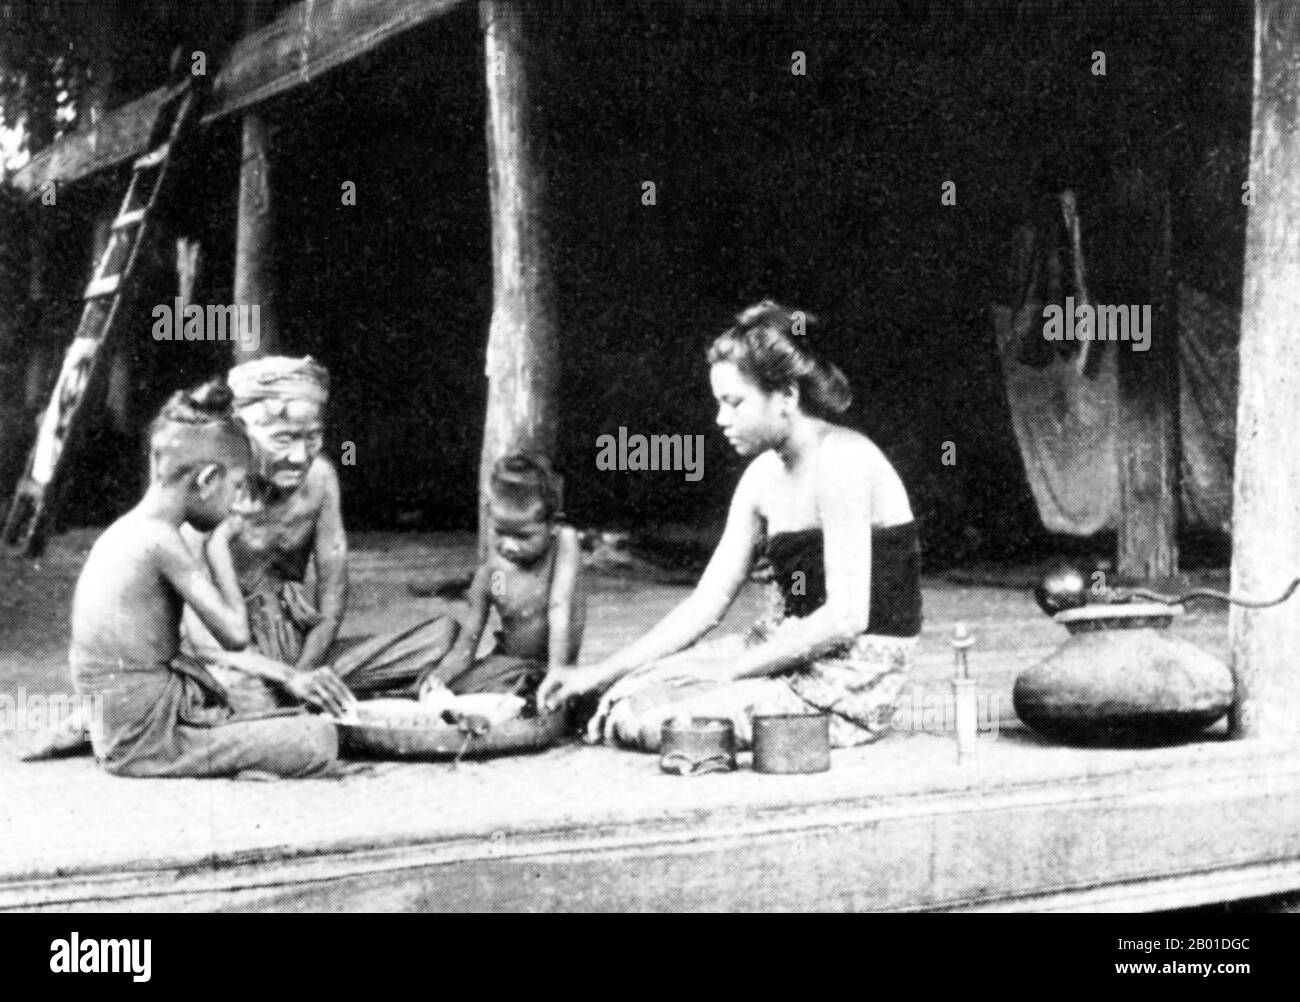 Birmanie : un dîner familial birman, vers 1892-1896. La conquête britannique de la Birmanie a commencé en 1824 en réponse à une tentative birmane d'envahir l'Inde. En 1886, et après deux autres guerres, la Grande-Bretagne avait incorporé tout le pays dans le Raj britannique. Pour stimuler le commerce et faciliter les changements, les Britanniques ont fait venir des Indiens et des Chinois, qui ont rapidement déplacé les Birmans dans les zones urbaines. À ce jour, Rangoon et Mandalay ont de grandes populations indiennes ethniques. Des chemins de fer et des écoles ont été construits, ainsi qu'un grand nombre de prisons, dont la tristement célèbre prison d'Insein. Banque D'Images